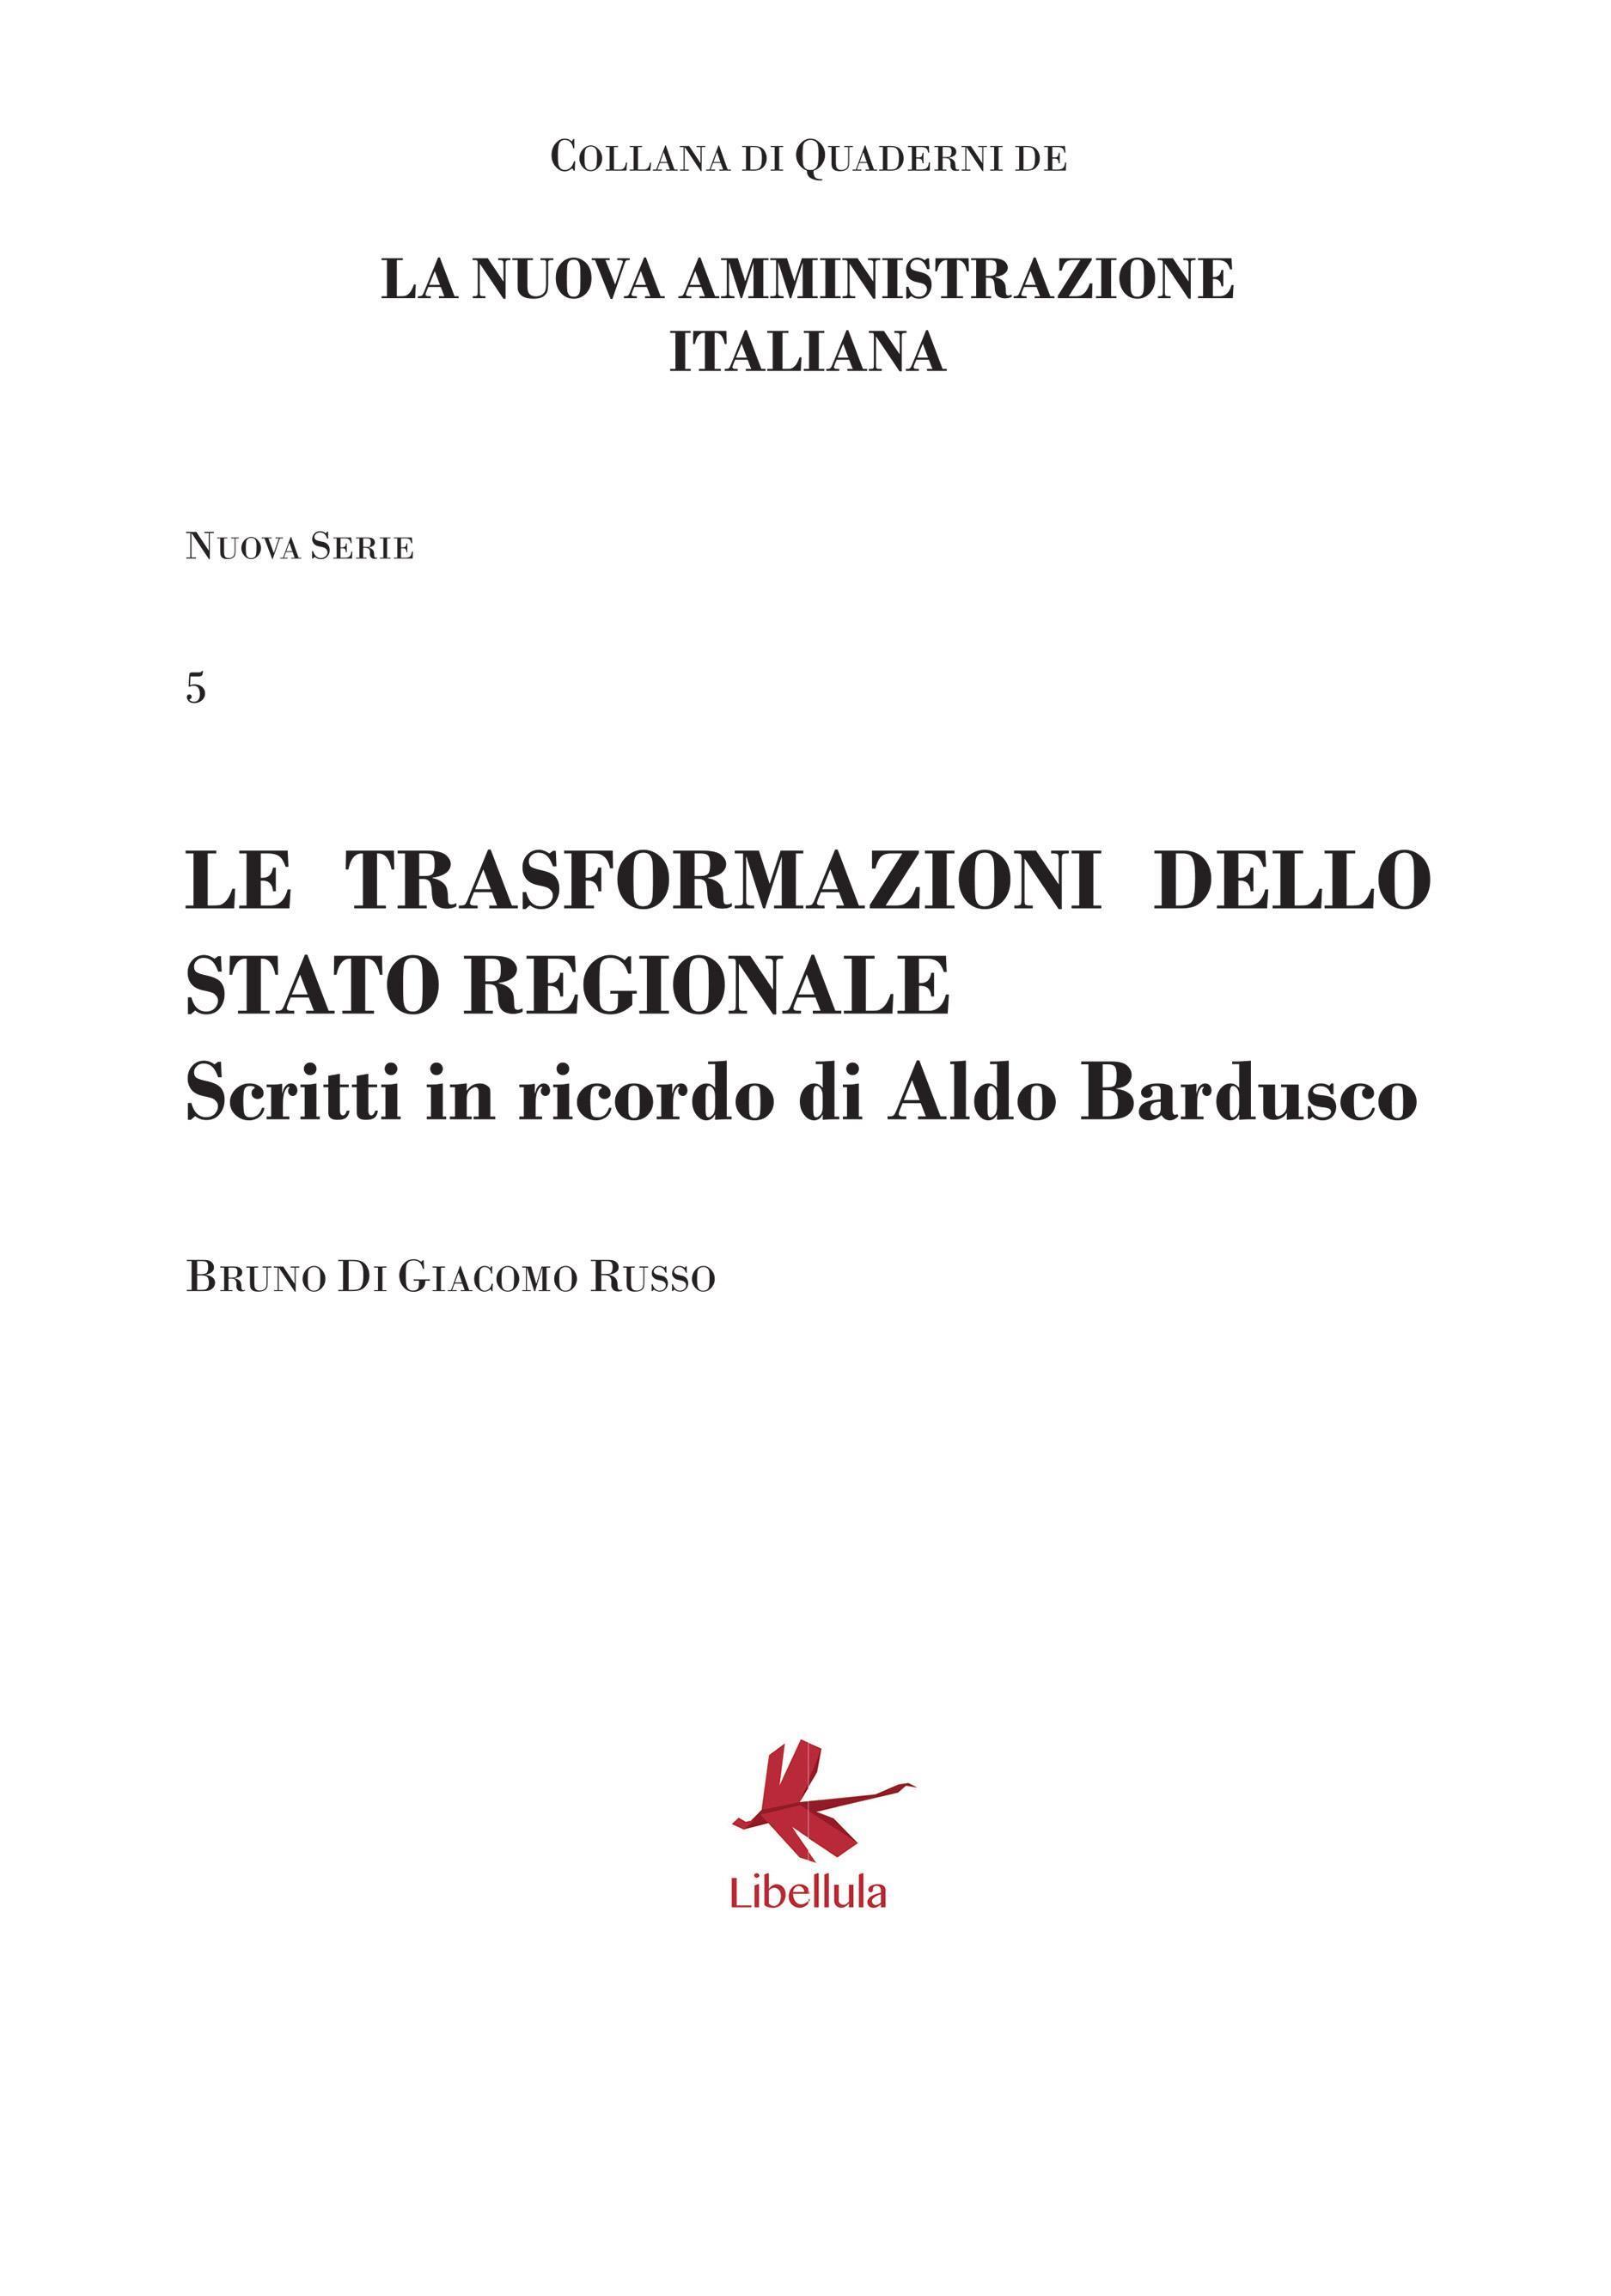 Le trasformazioni dello stato regionale - Scritti in ricordo di Aldo Bardusco